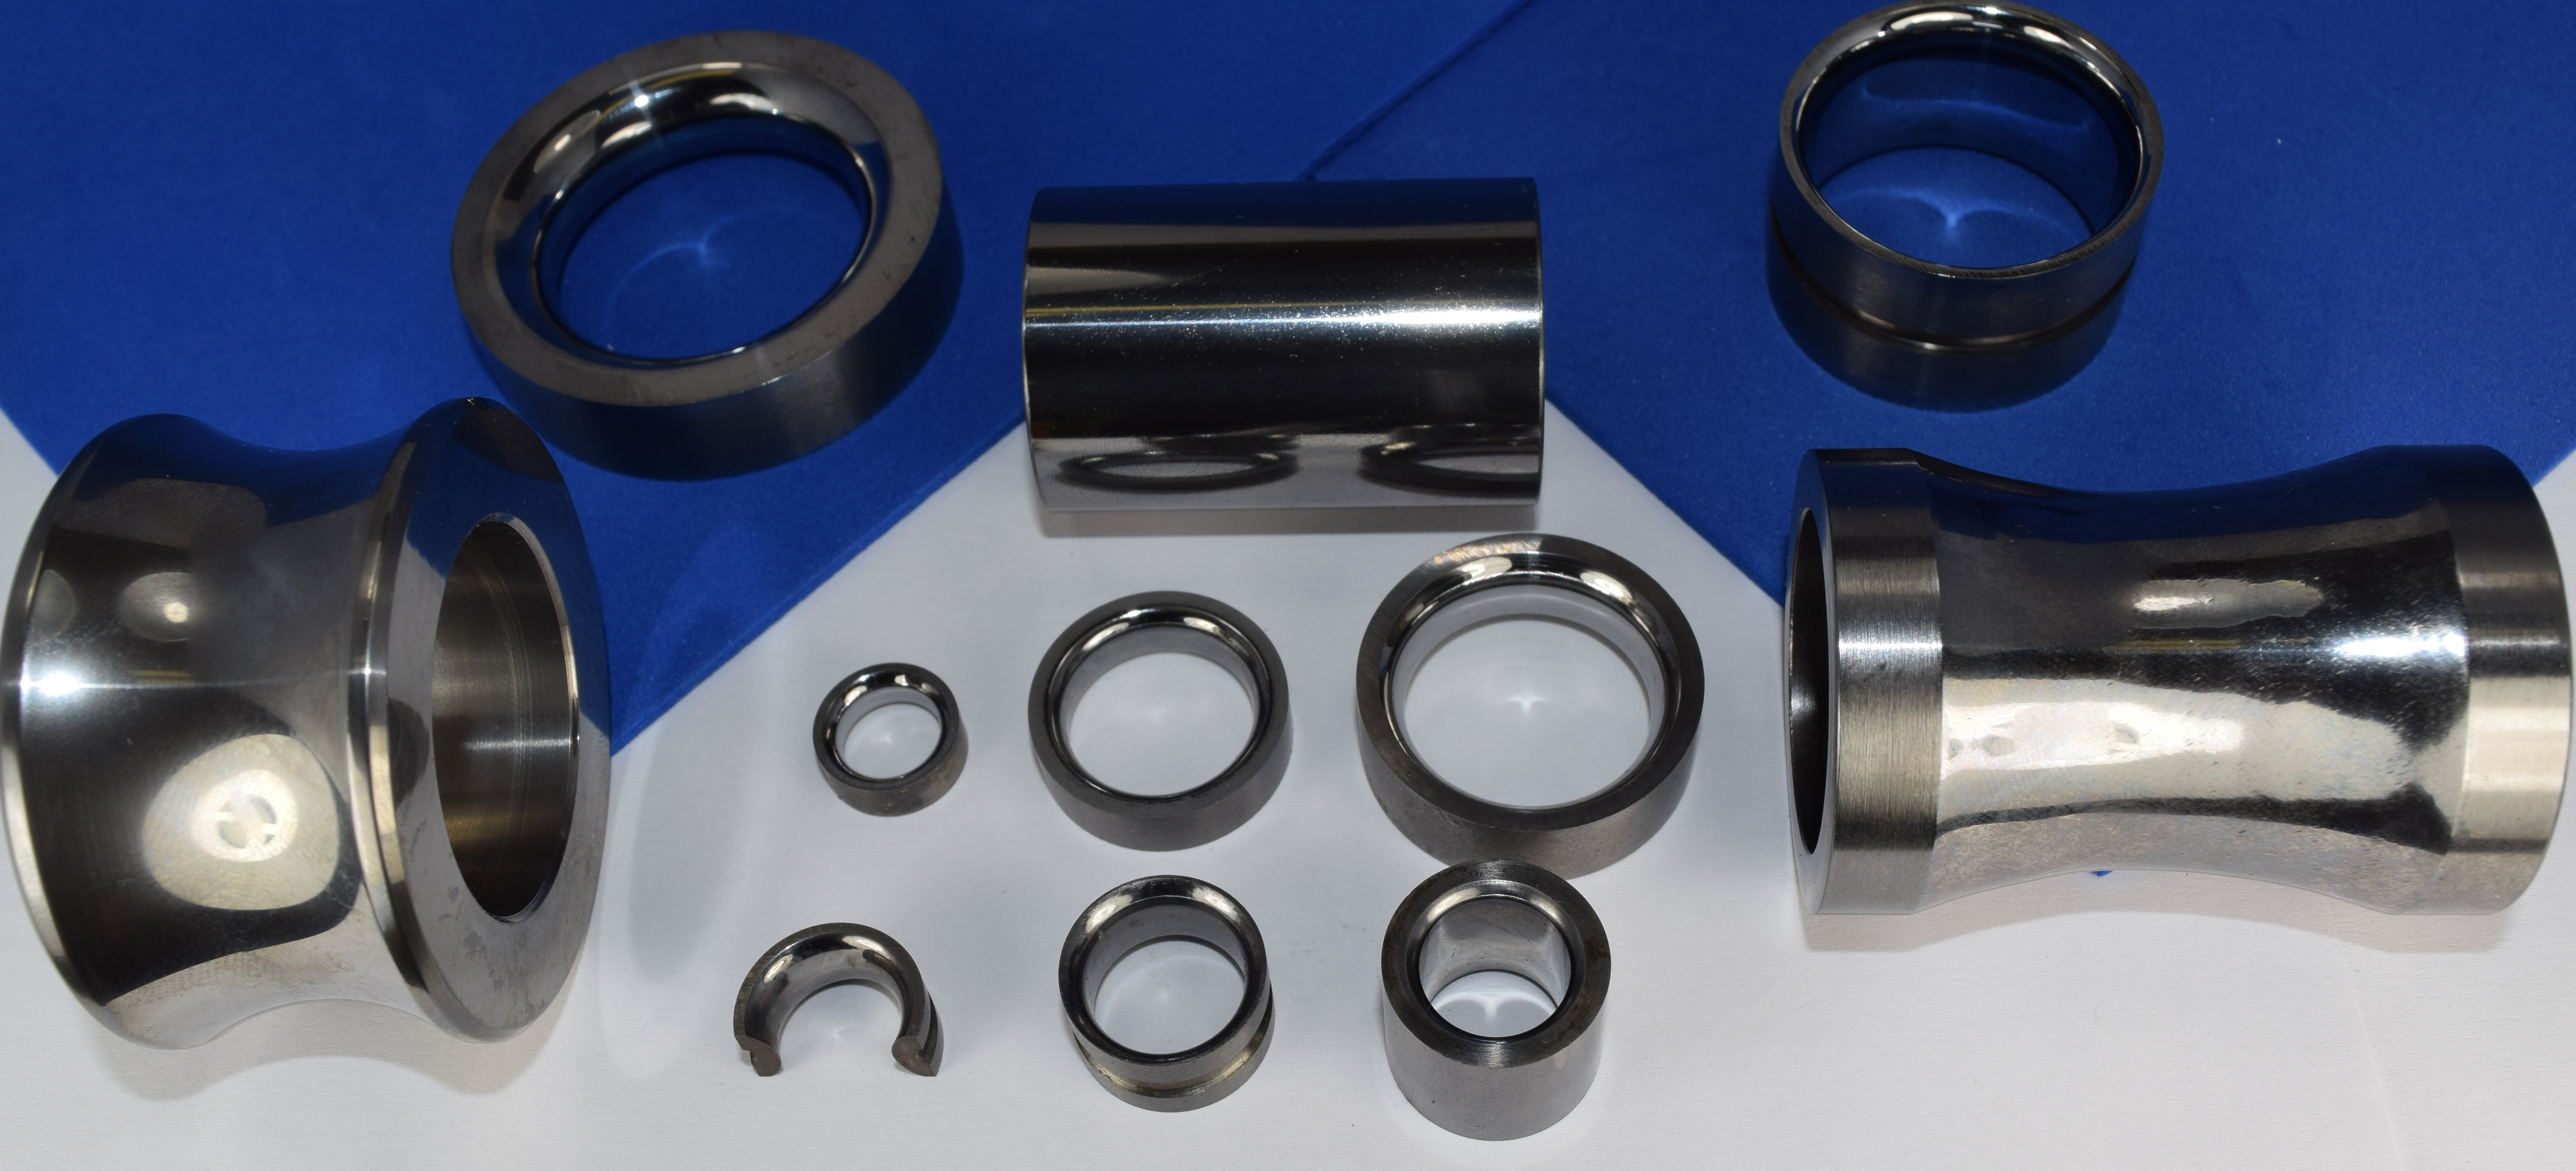 Solid Tungsten Carbide Parts by Cemanco - Cemanco